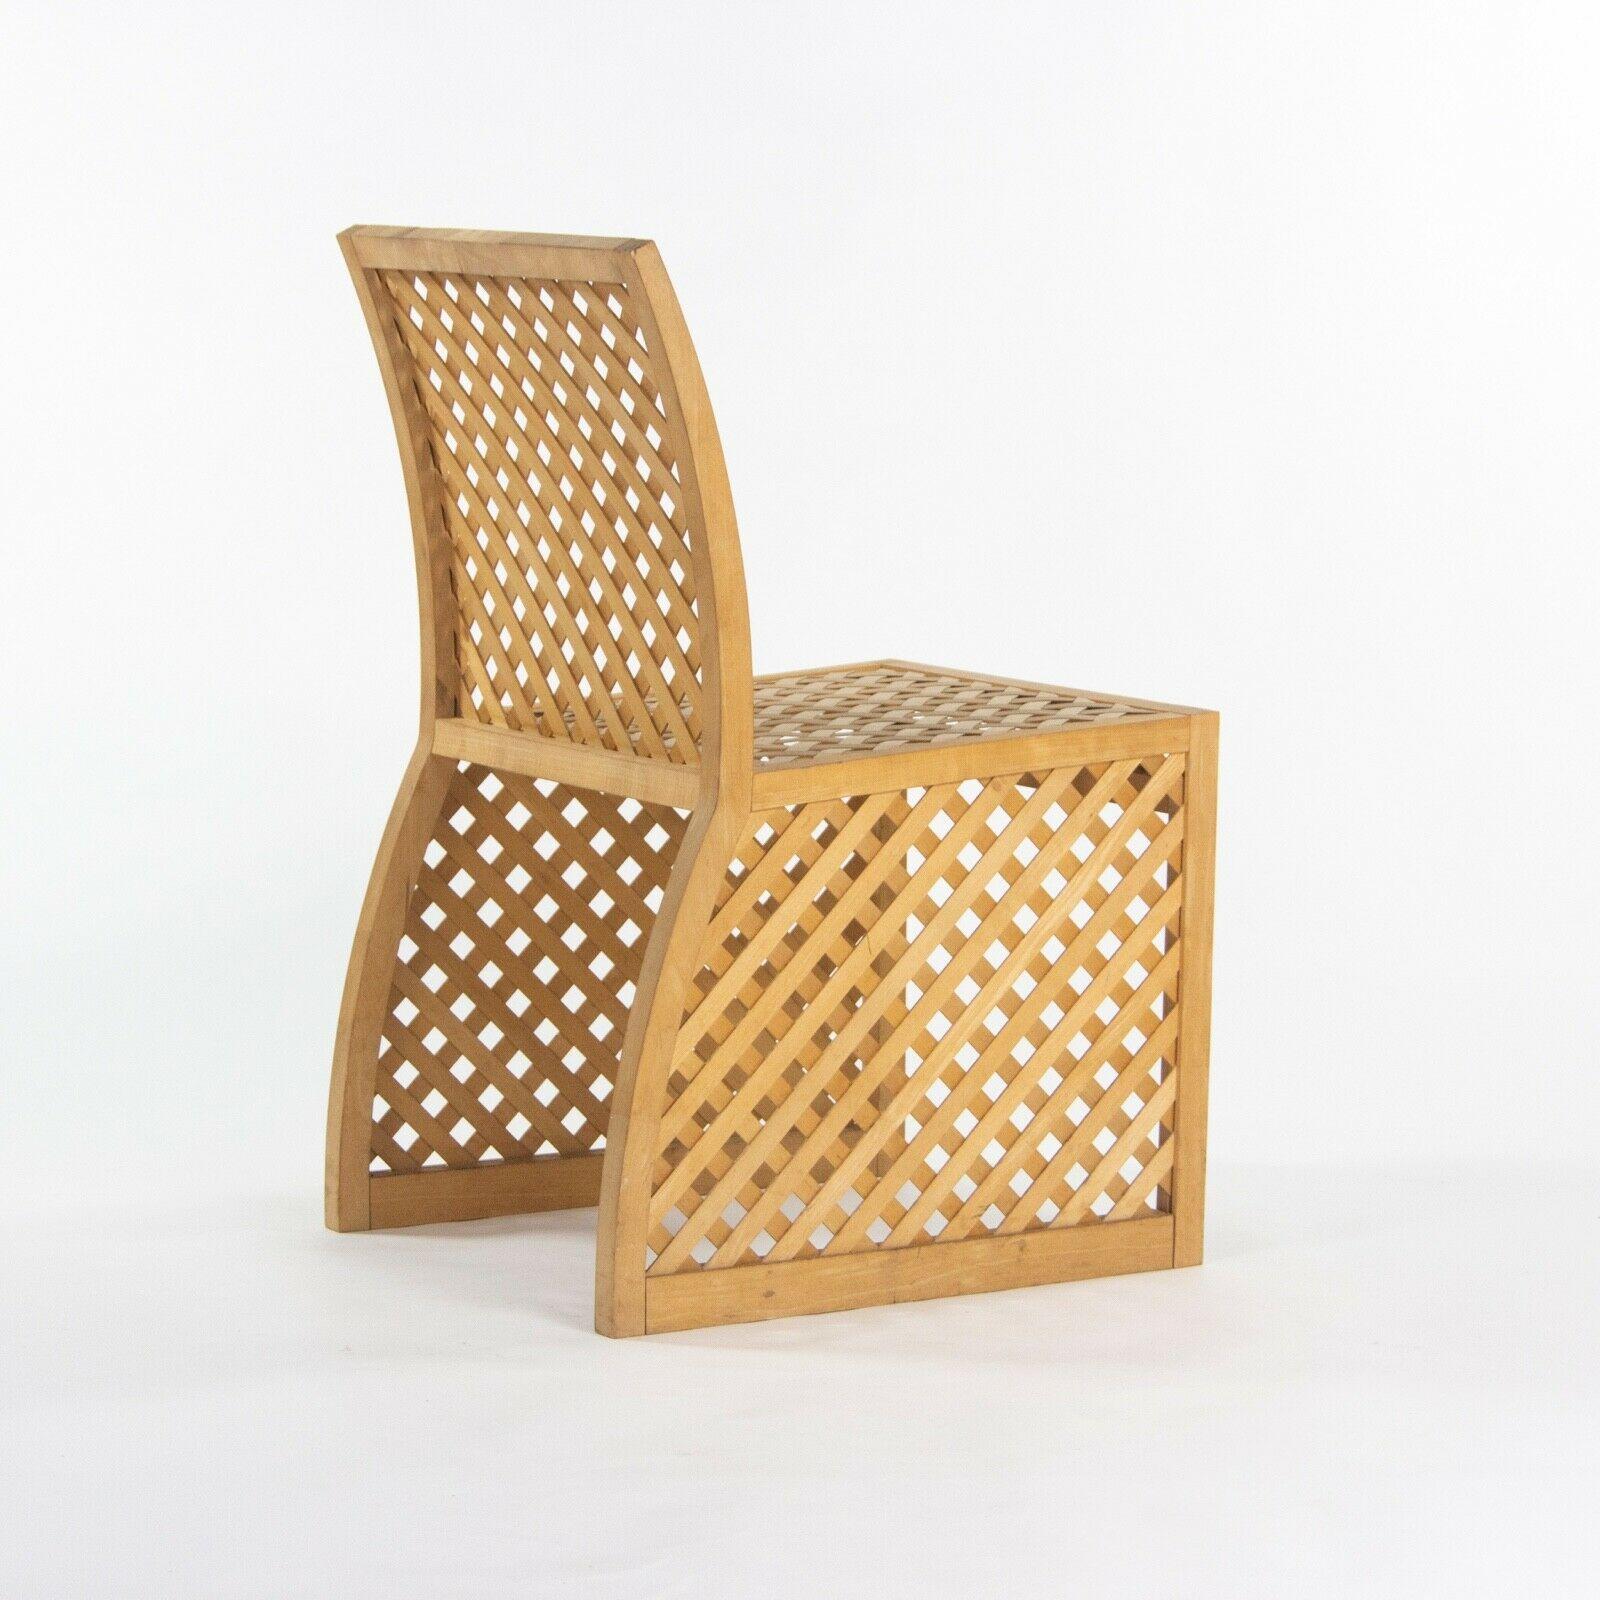 Américain Prototype de chaise de salle à manger de la collection extérieure Richard Schultz en bois, 1985